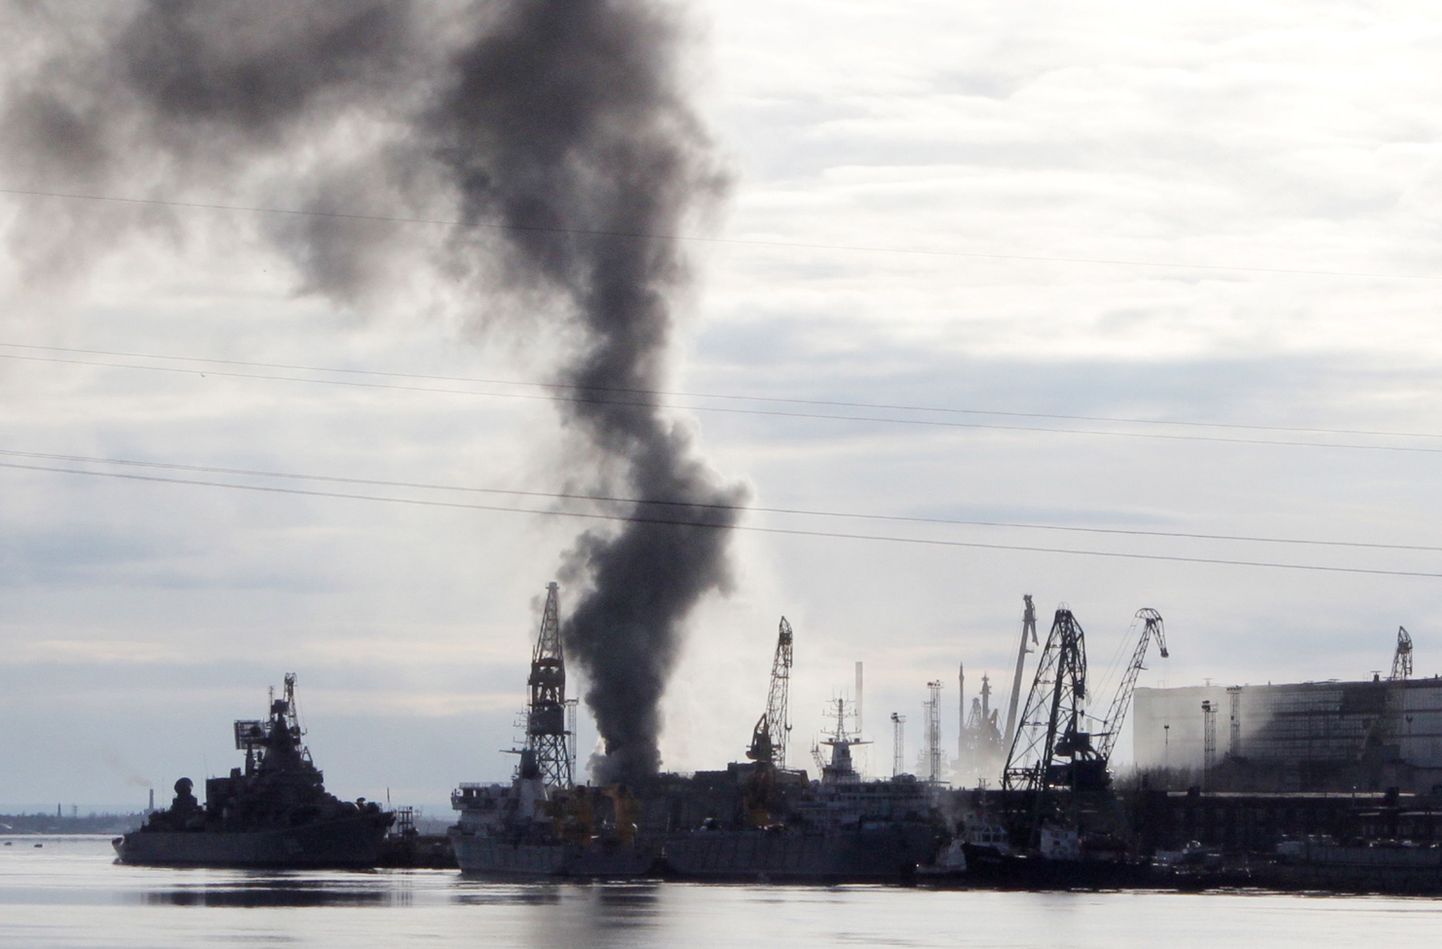 Tuumaallveelaevast Orjol kerkinud suitsusammas paistis kaugele.